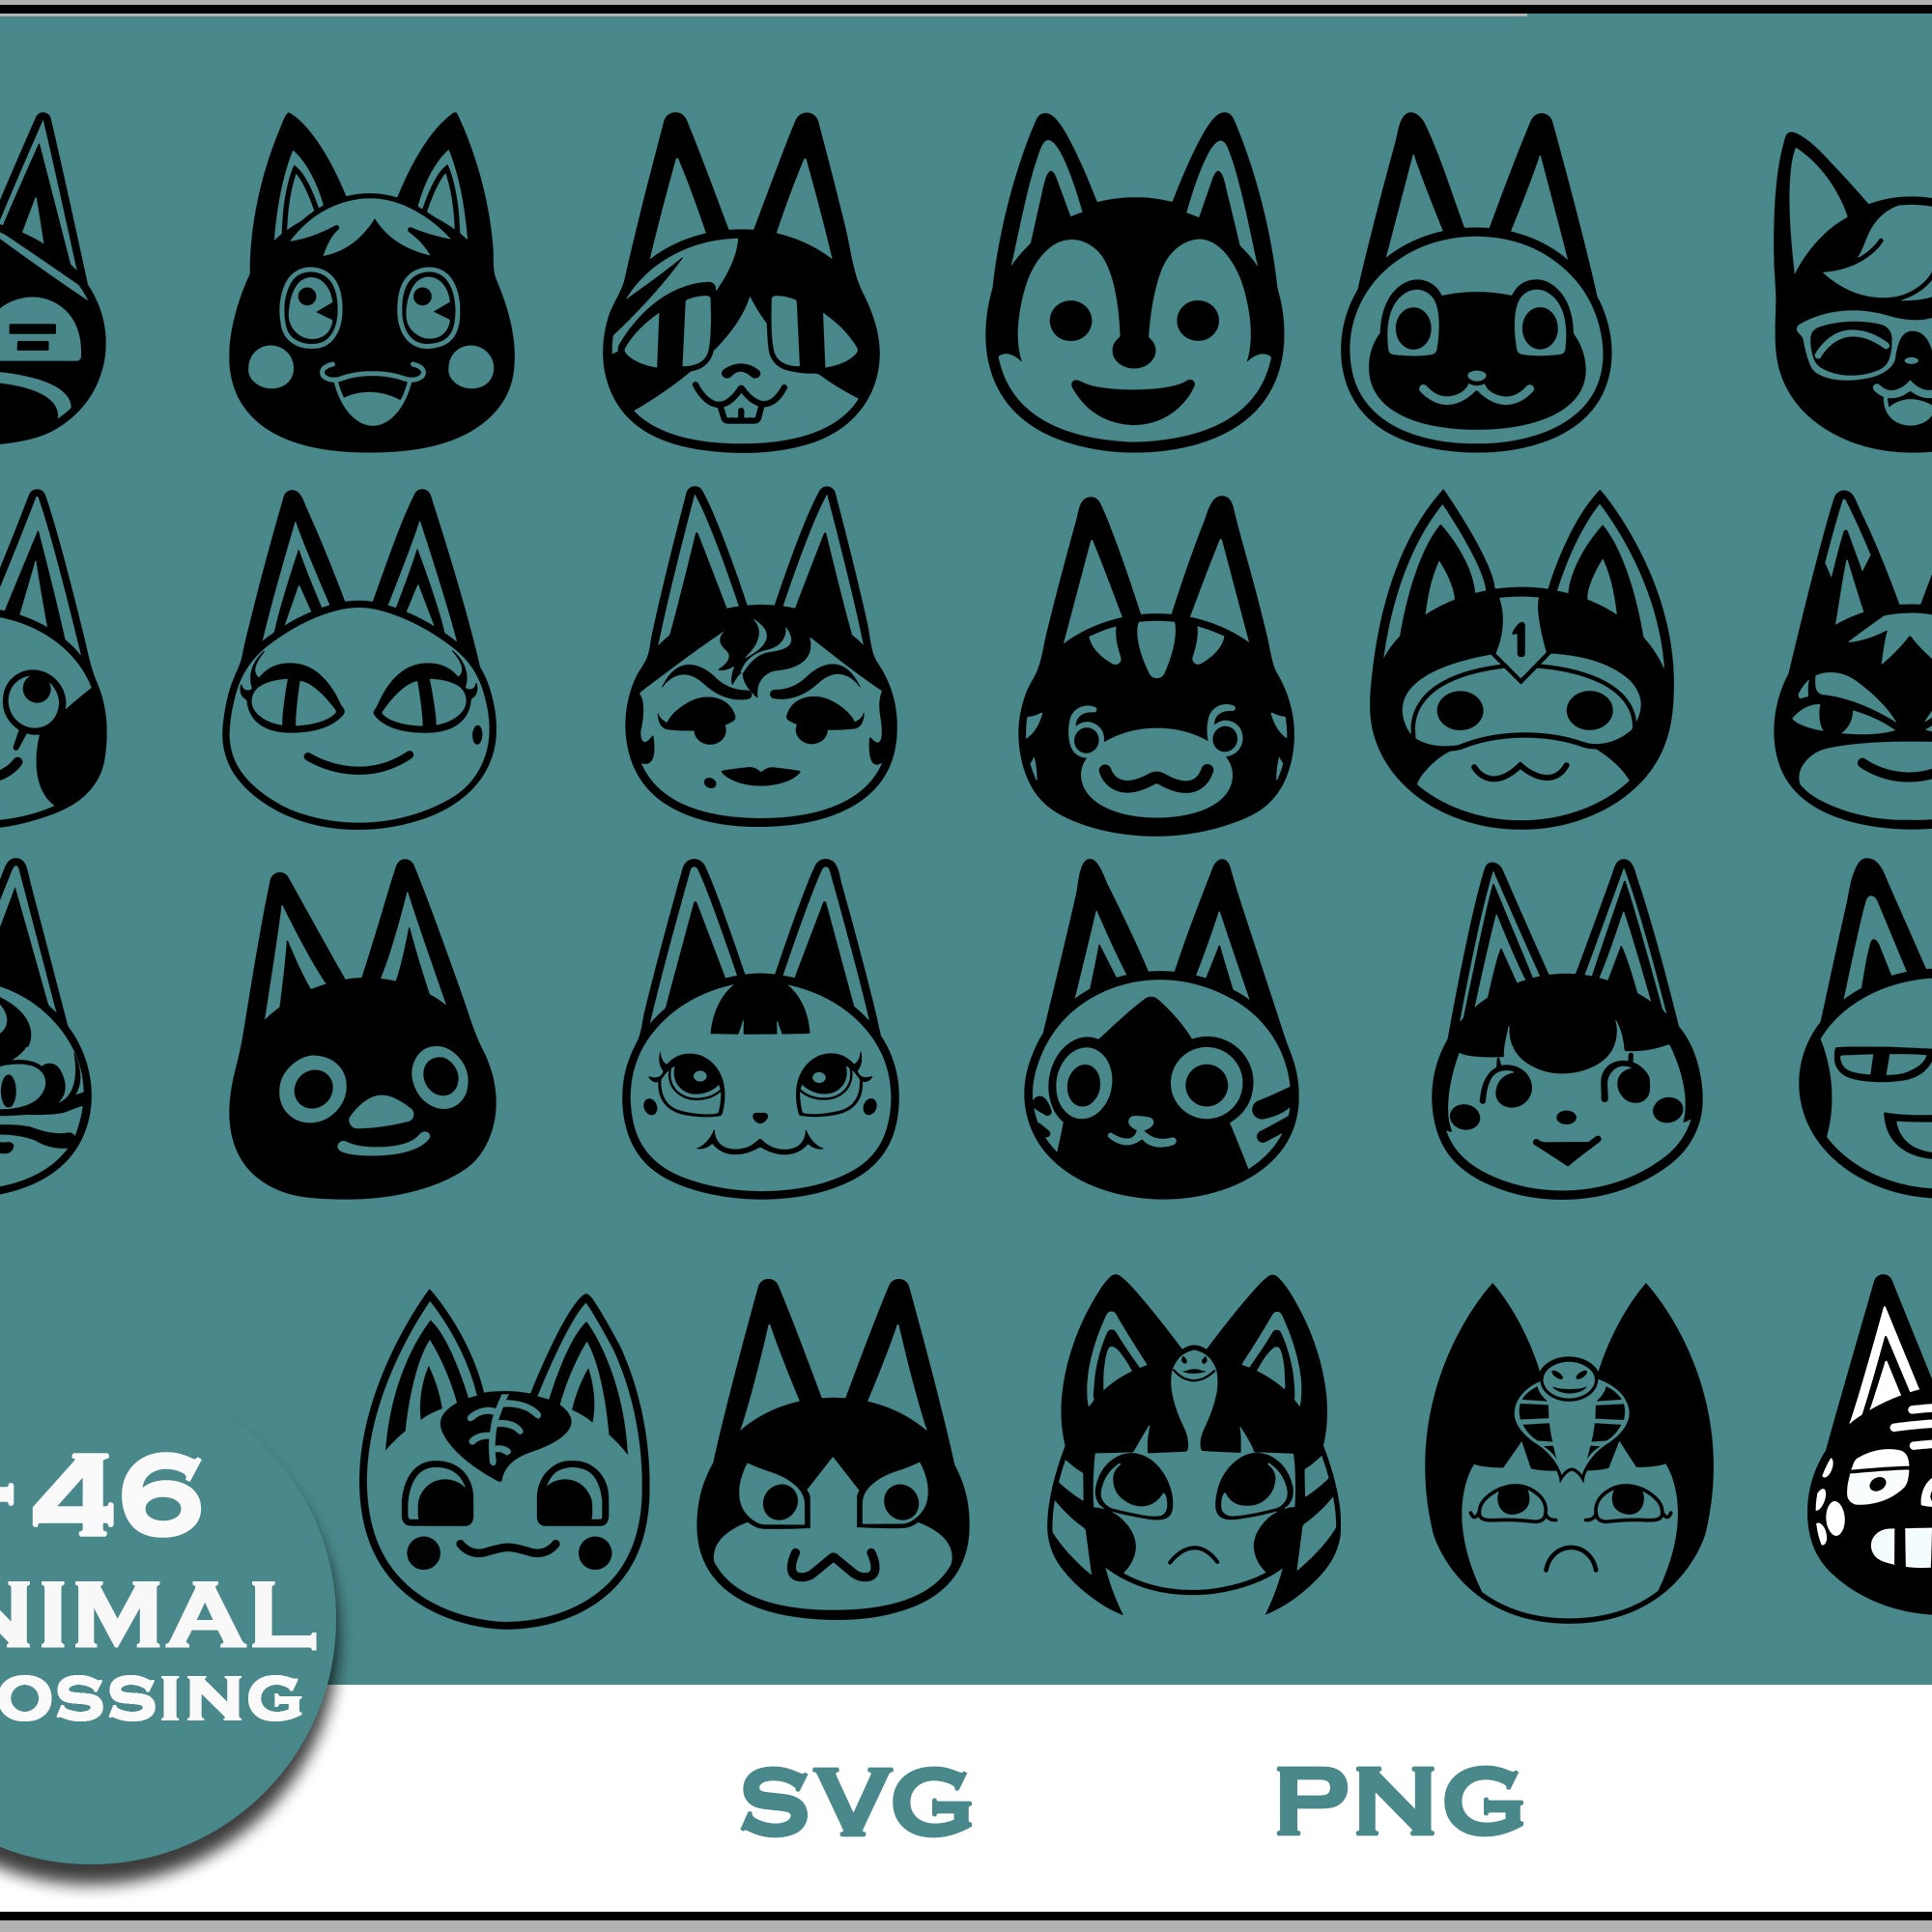 46+ Cat Svg Bundle, Animal Crossing Svg Bundle, Animal Crossing Svg, Cartoon svg, png digital file